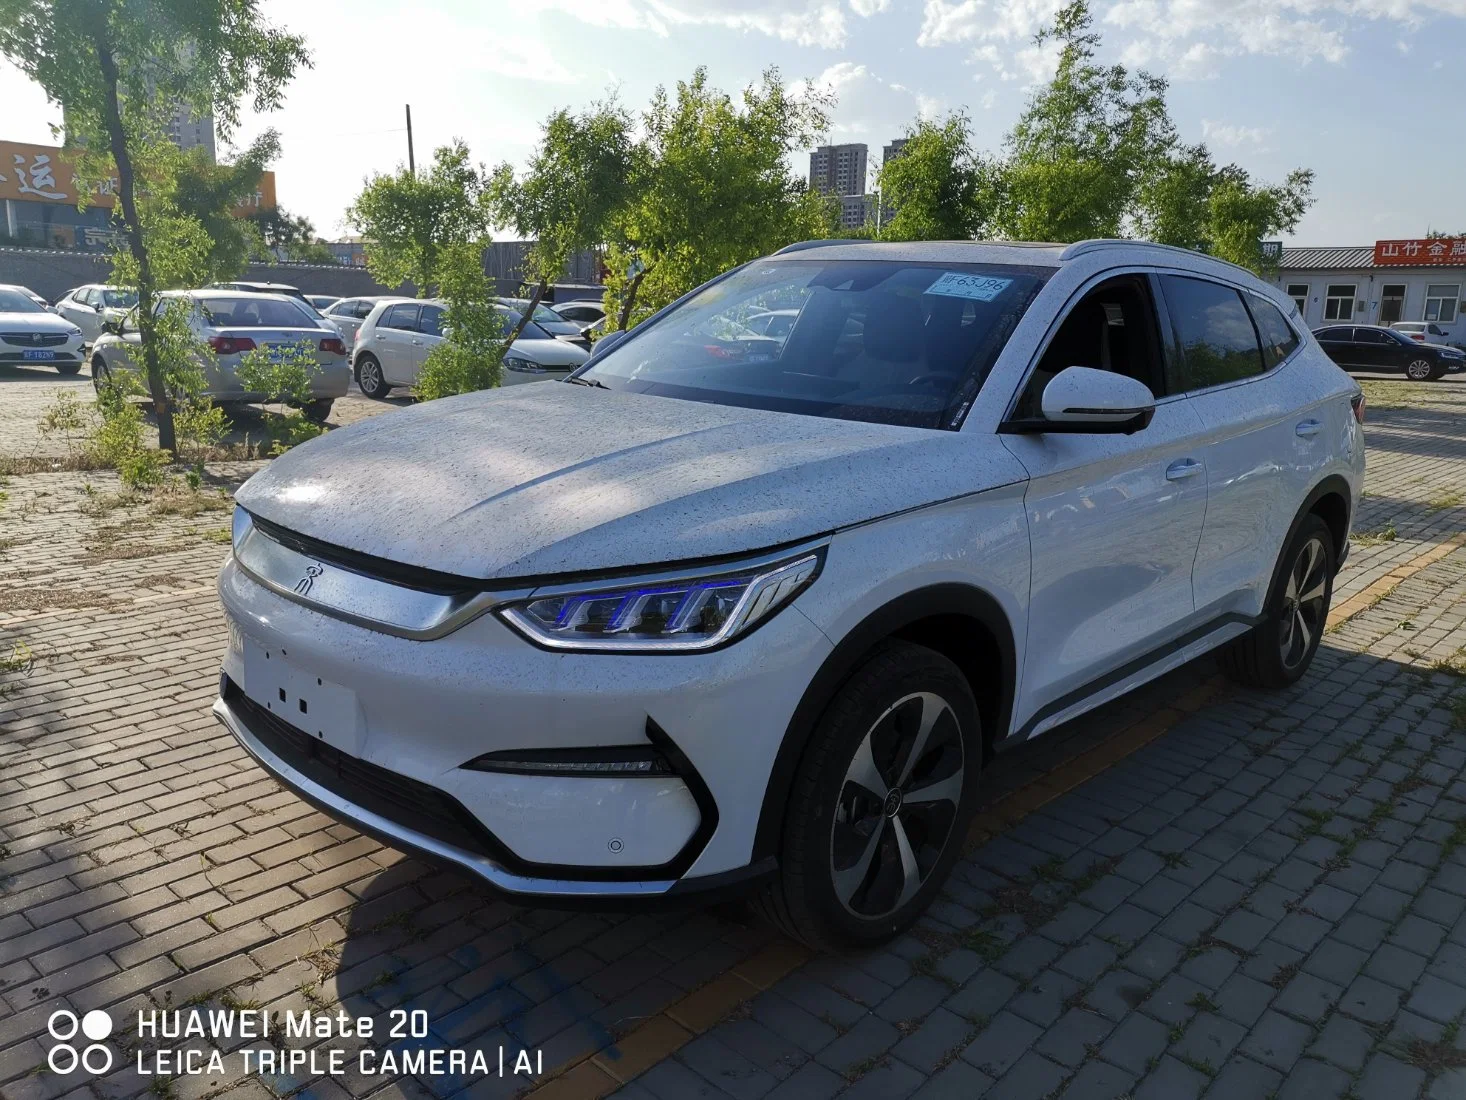 2022 Китая EV Byd Byd песни плюс Цинь песни Хан Тан Юань легковых транспортных средств большой скорости автомобиля кроссовер электромобилей новых автомобилей